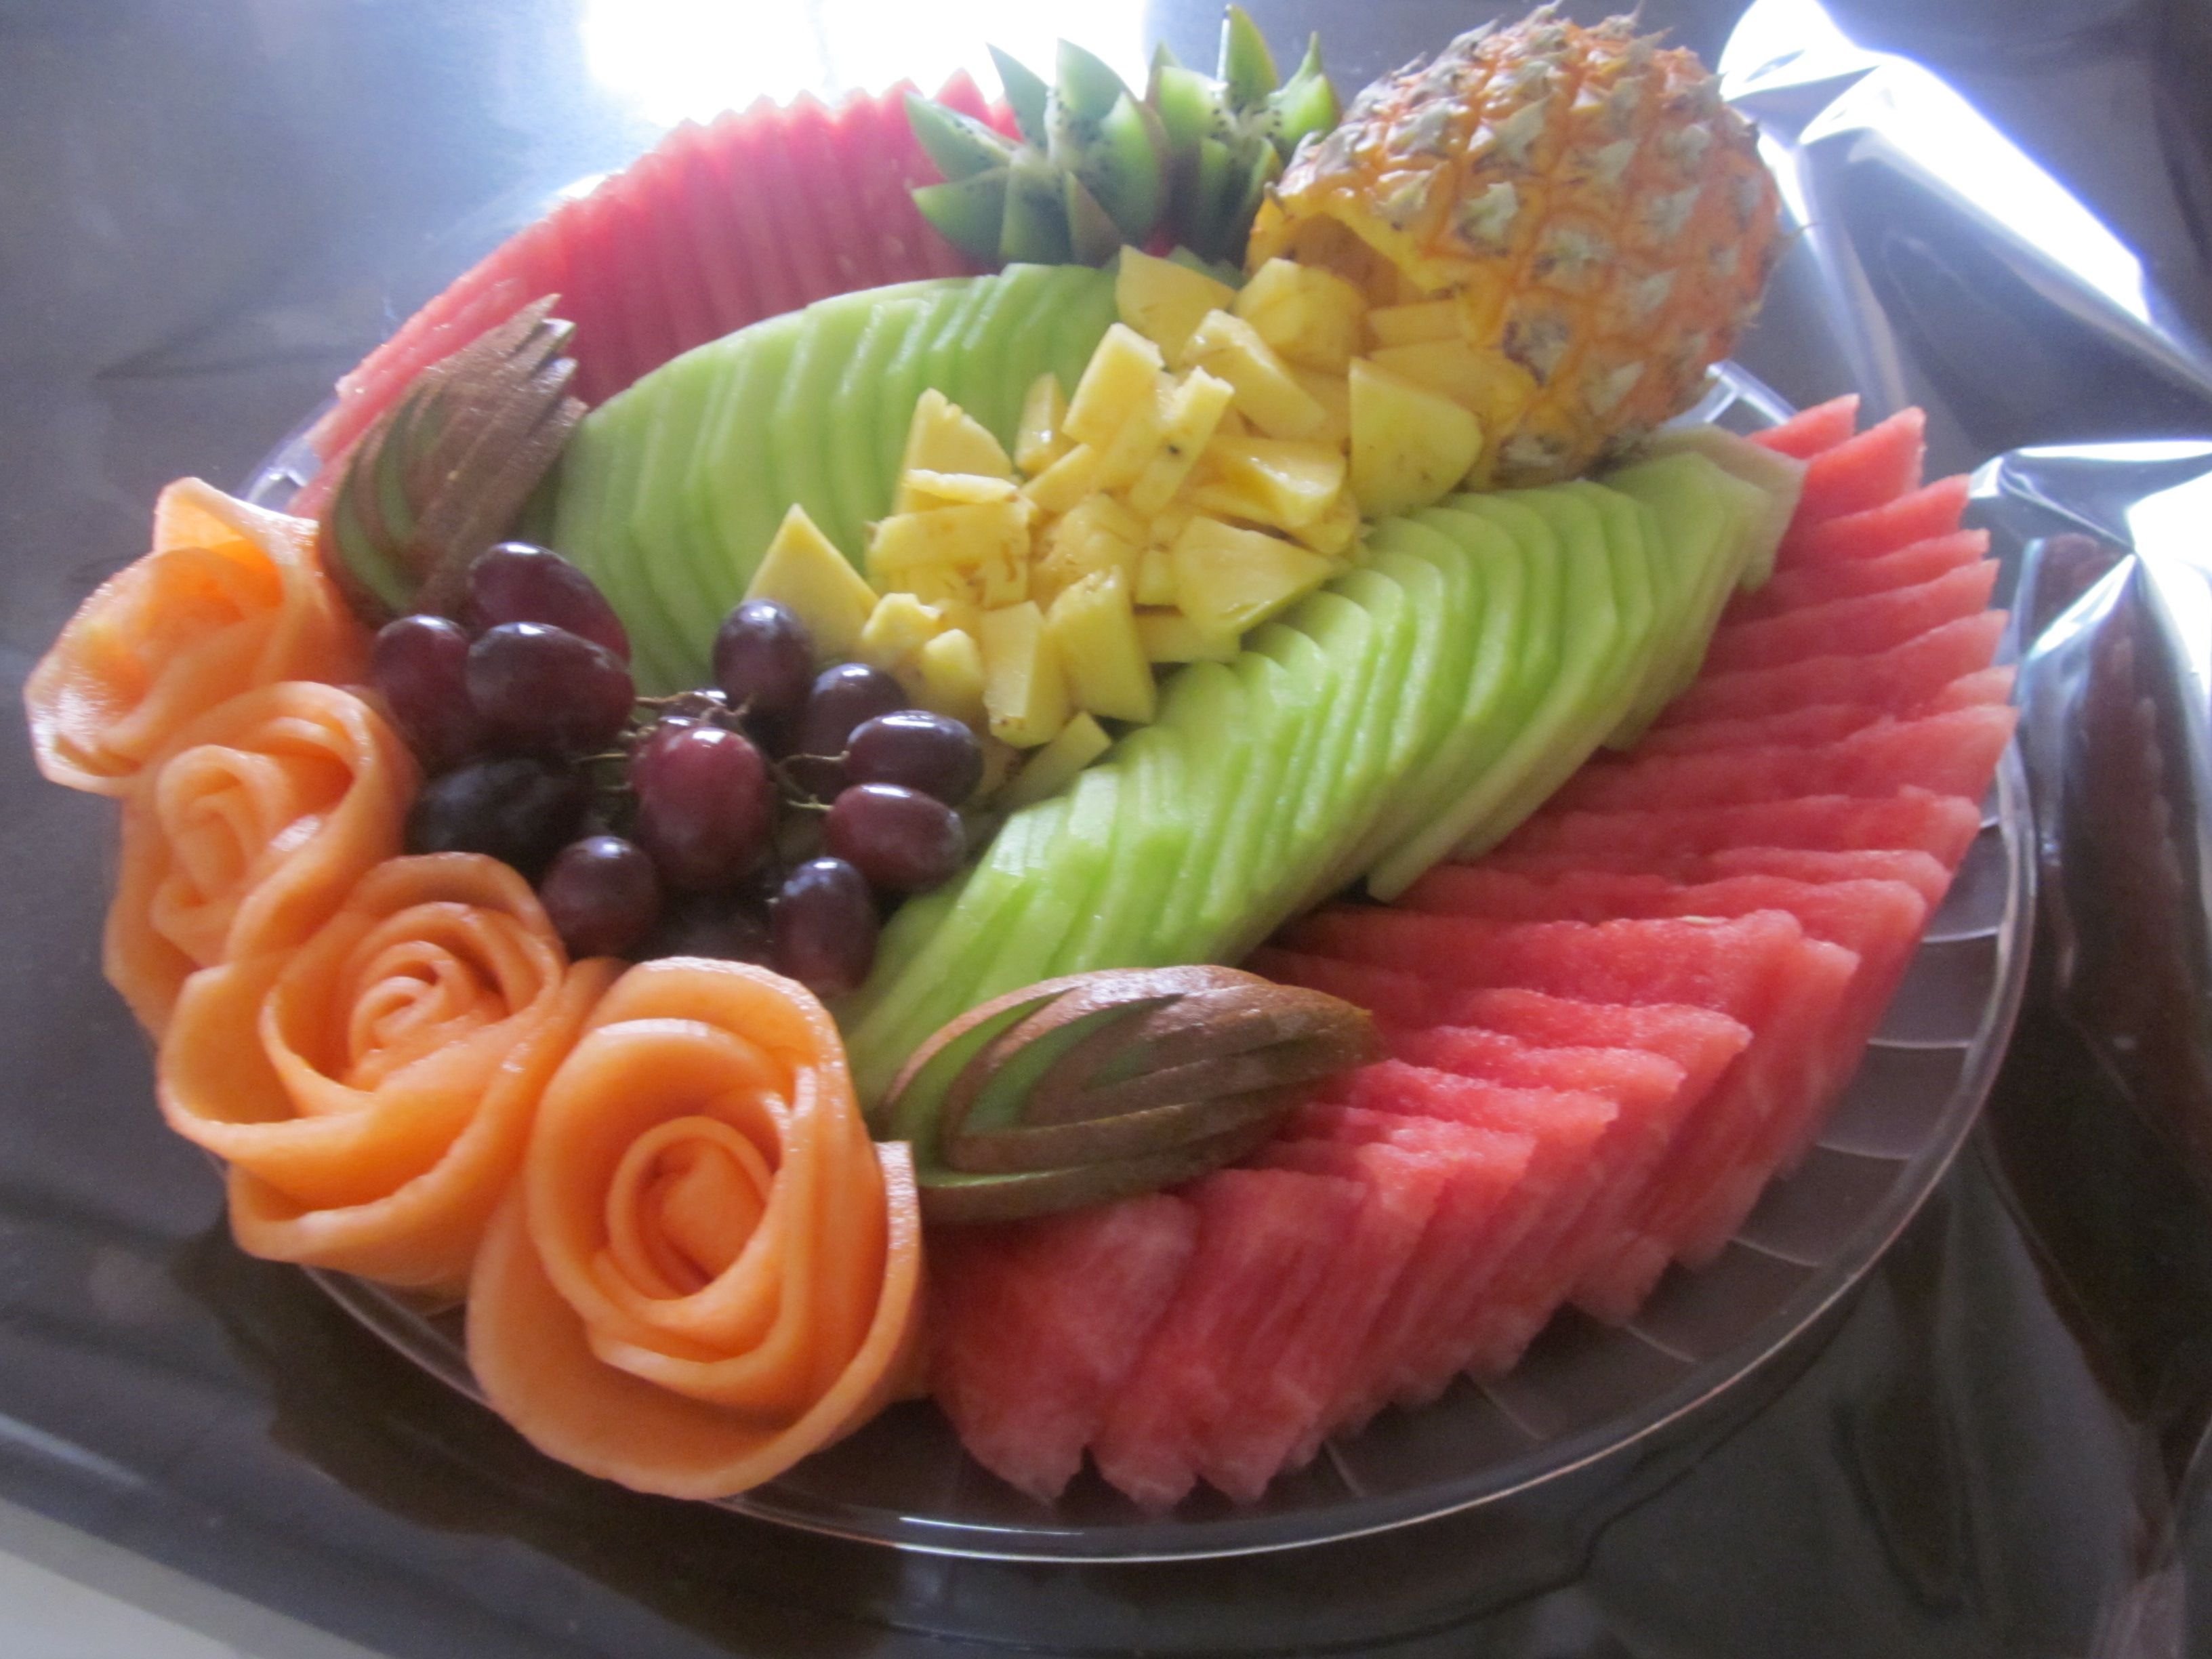 Домашние подборки нарезки. Красивая нарезка фруктов. Красиво нарезать фрукты. Фруктовая тарелка. Красивые нарезки из овощей и фруктов.